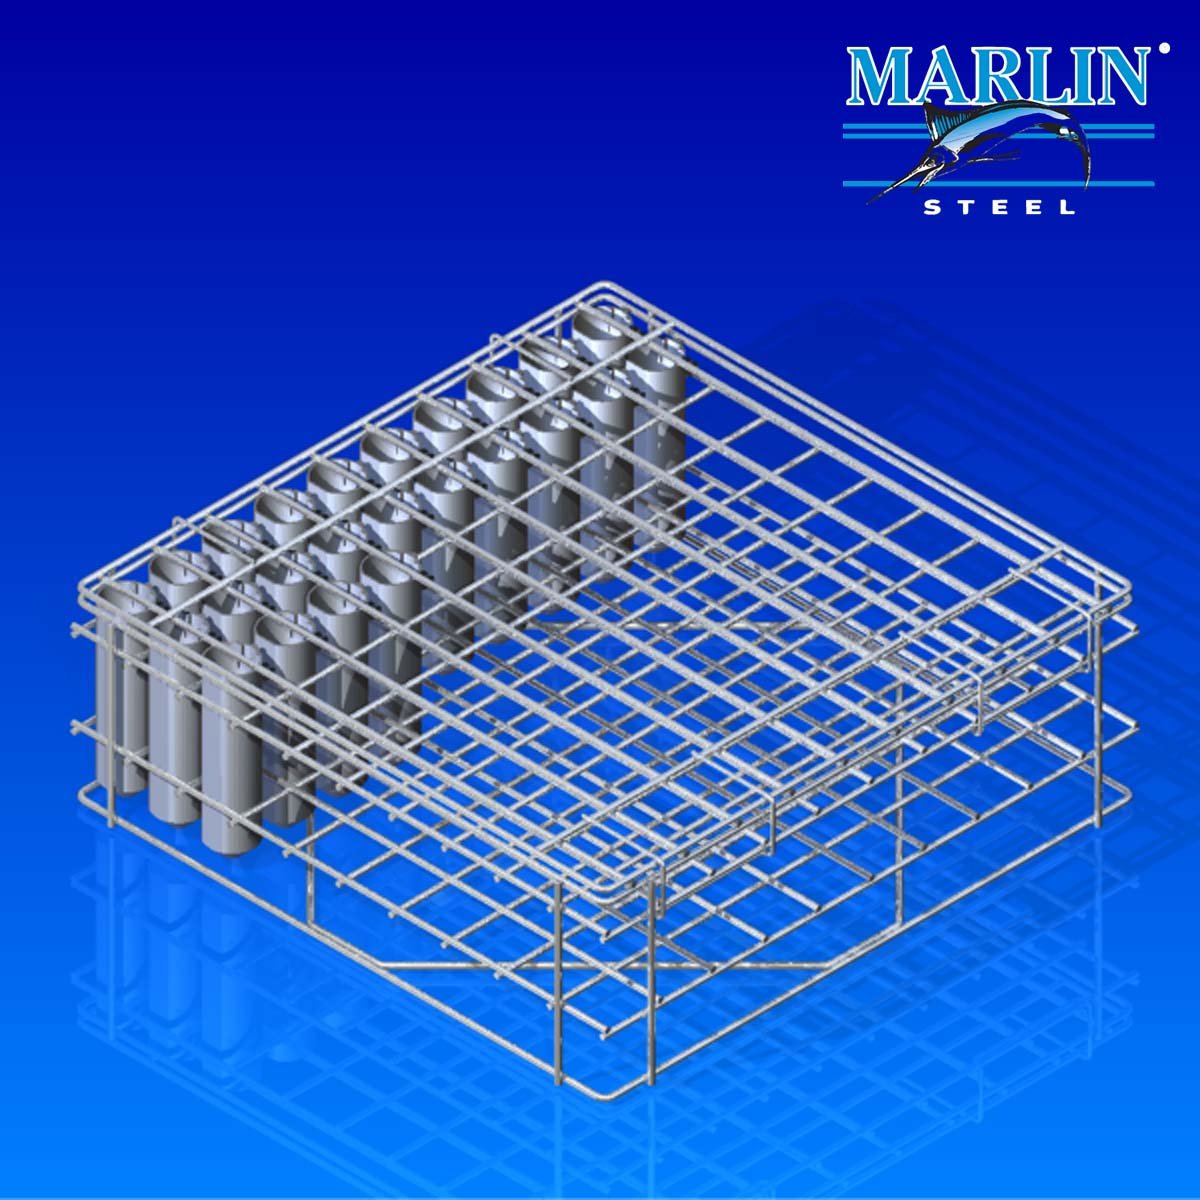 Marlin Steel wire baskets with lids 1058001.jpg